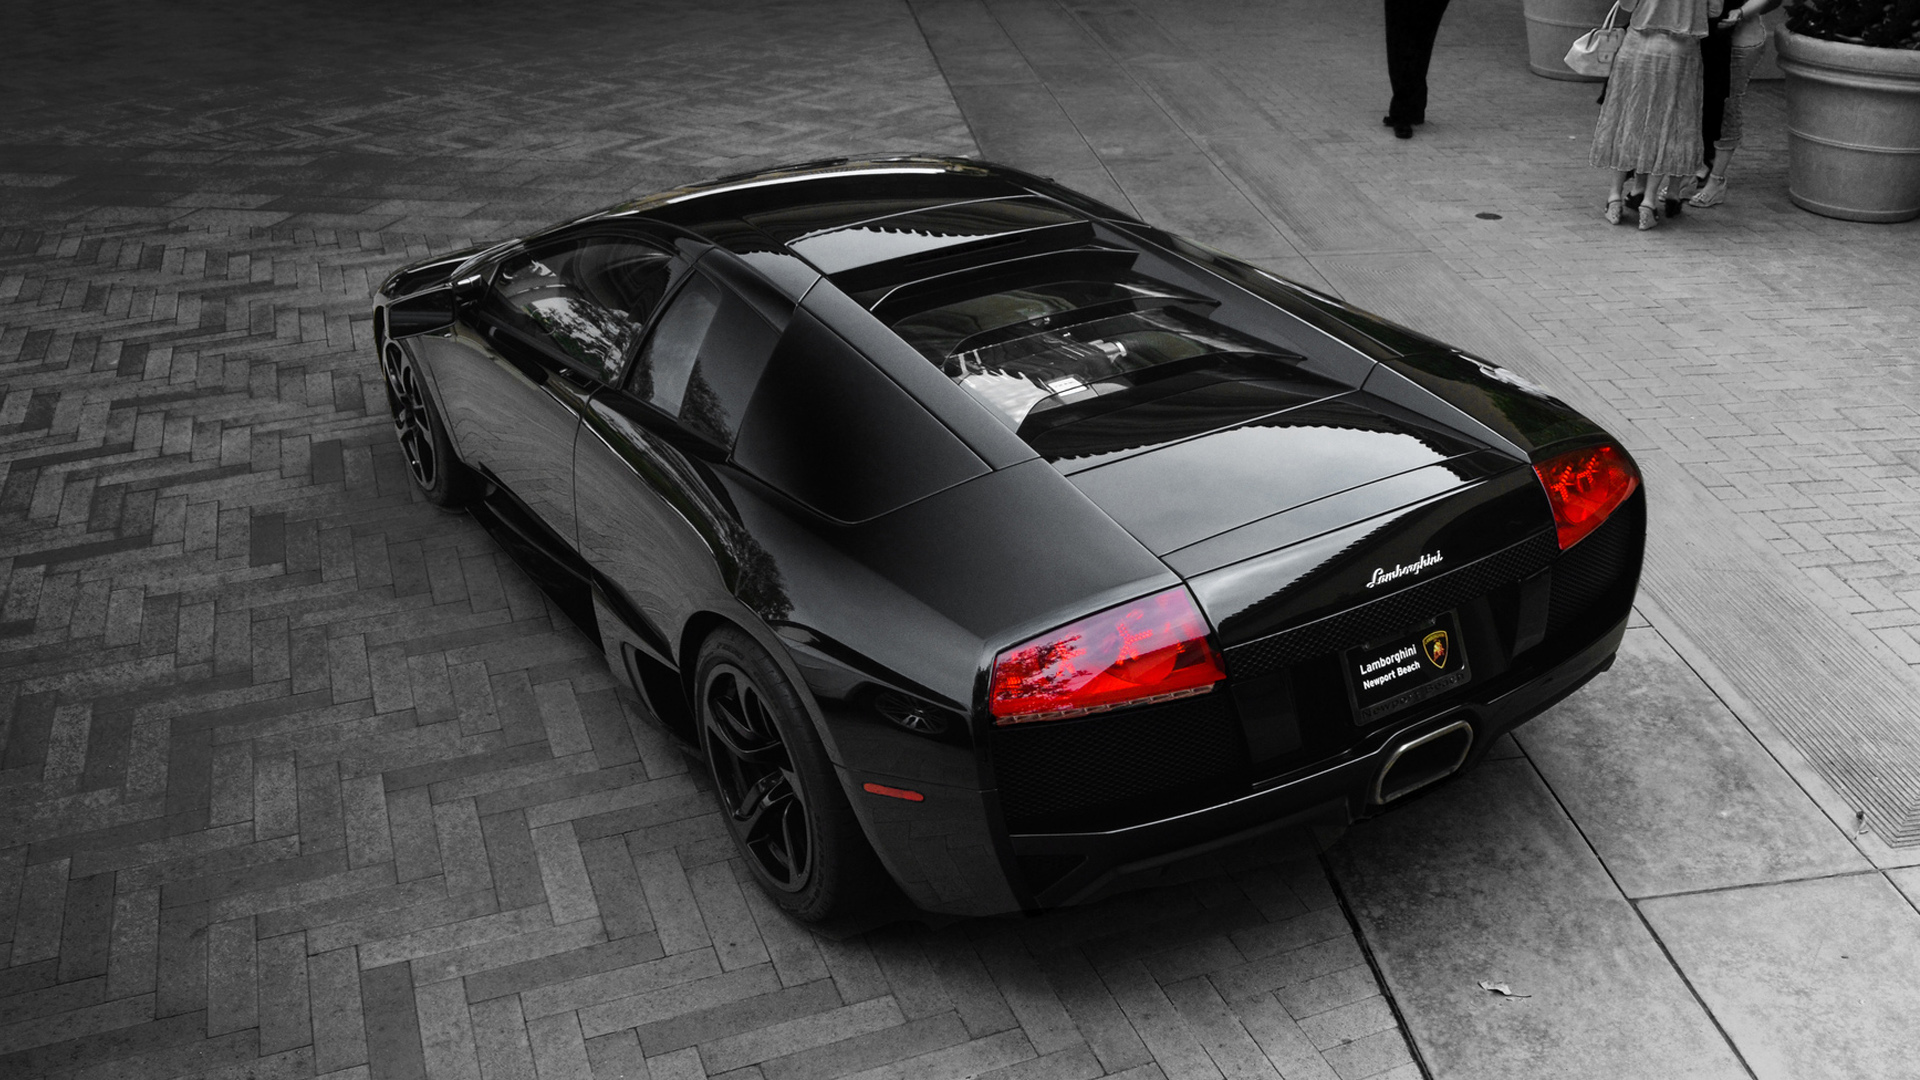 Black Lamborghini Murcielago Lp640 Wallpaper HD Car